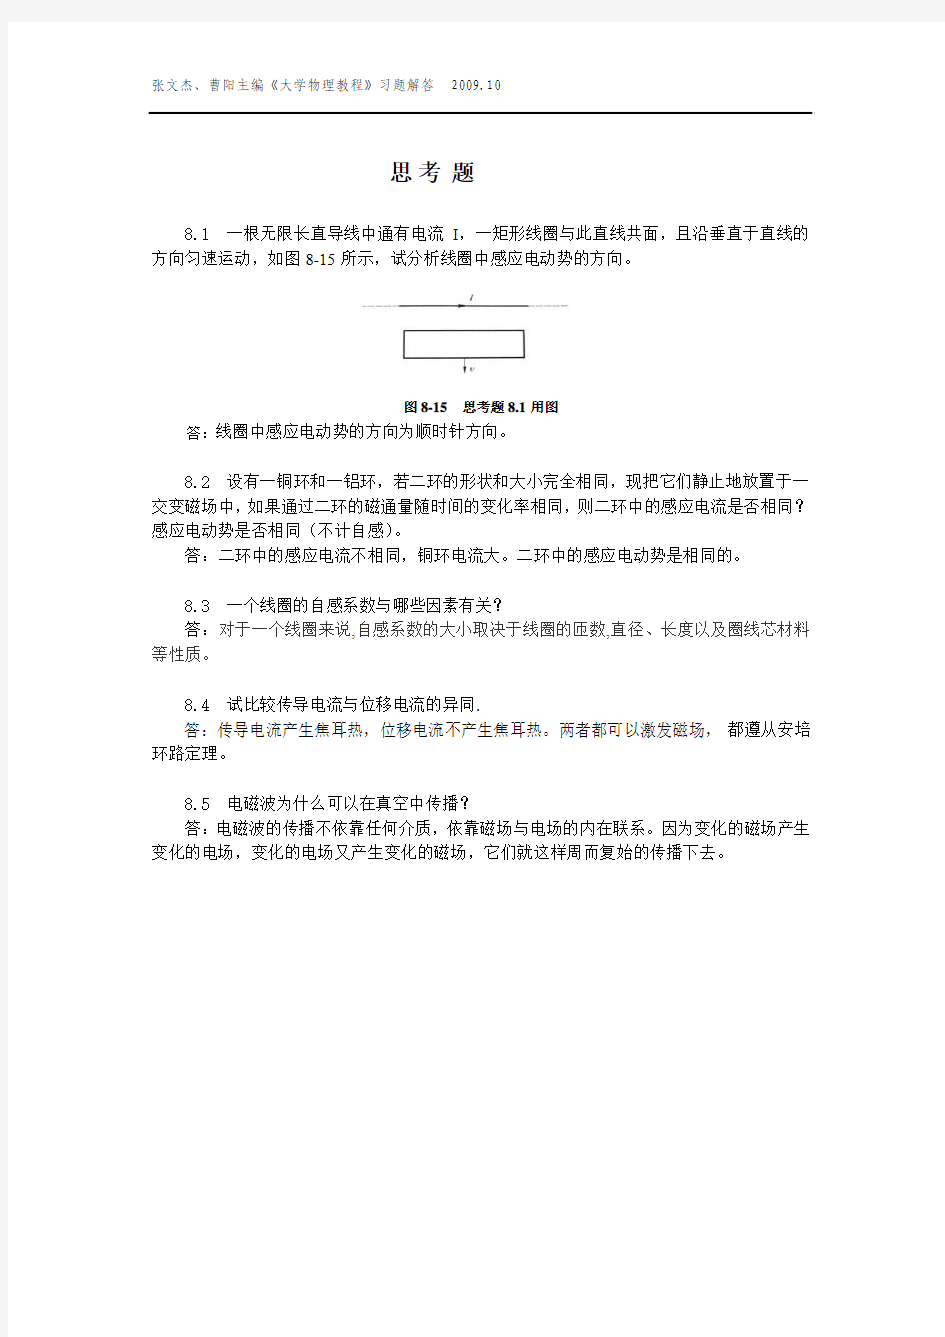 大学物理教程第8章 (张文杰 曹阳 著) 中国农业大学出版社